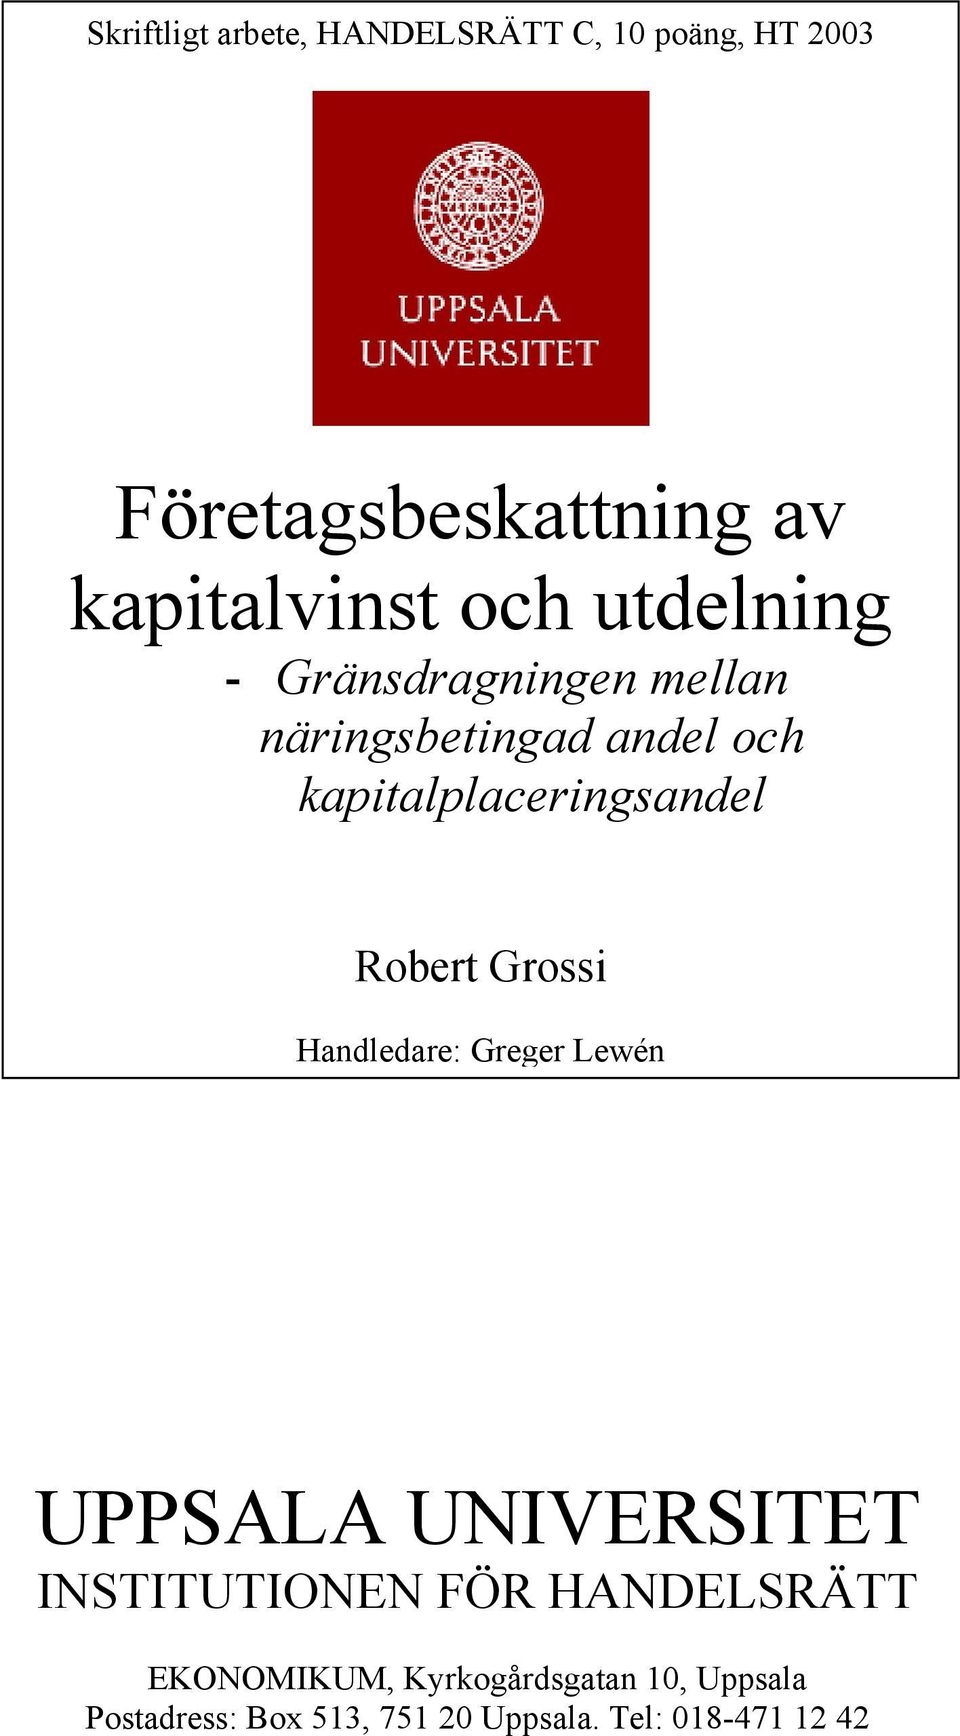 Robert Grossi Handledare: Greger Lewén UPPSALA UNIVERSITET INSTITUTIONEN FÖR HANDELSRÄTT